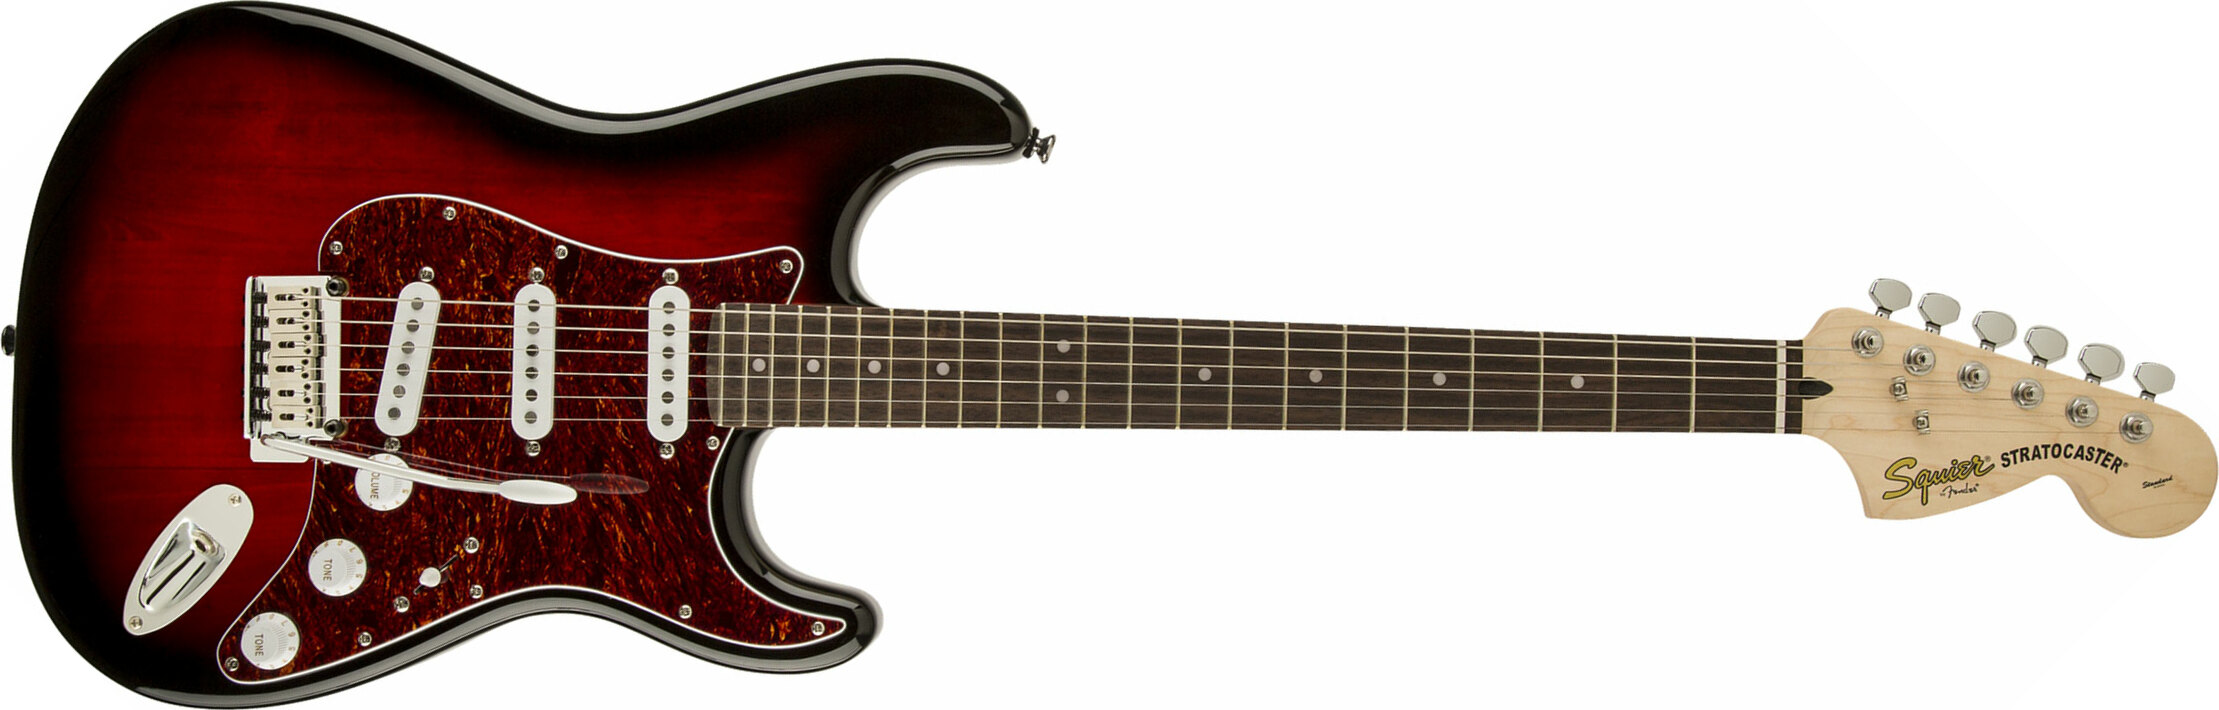 Squier Strat Standard Rw - Antique Burst - Str shape electric guitar - Main picture